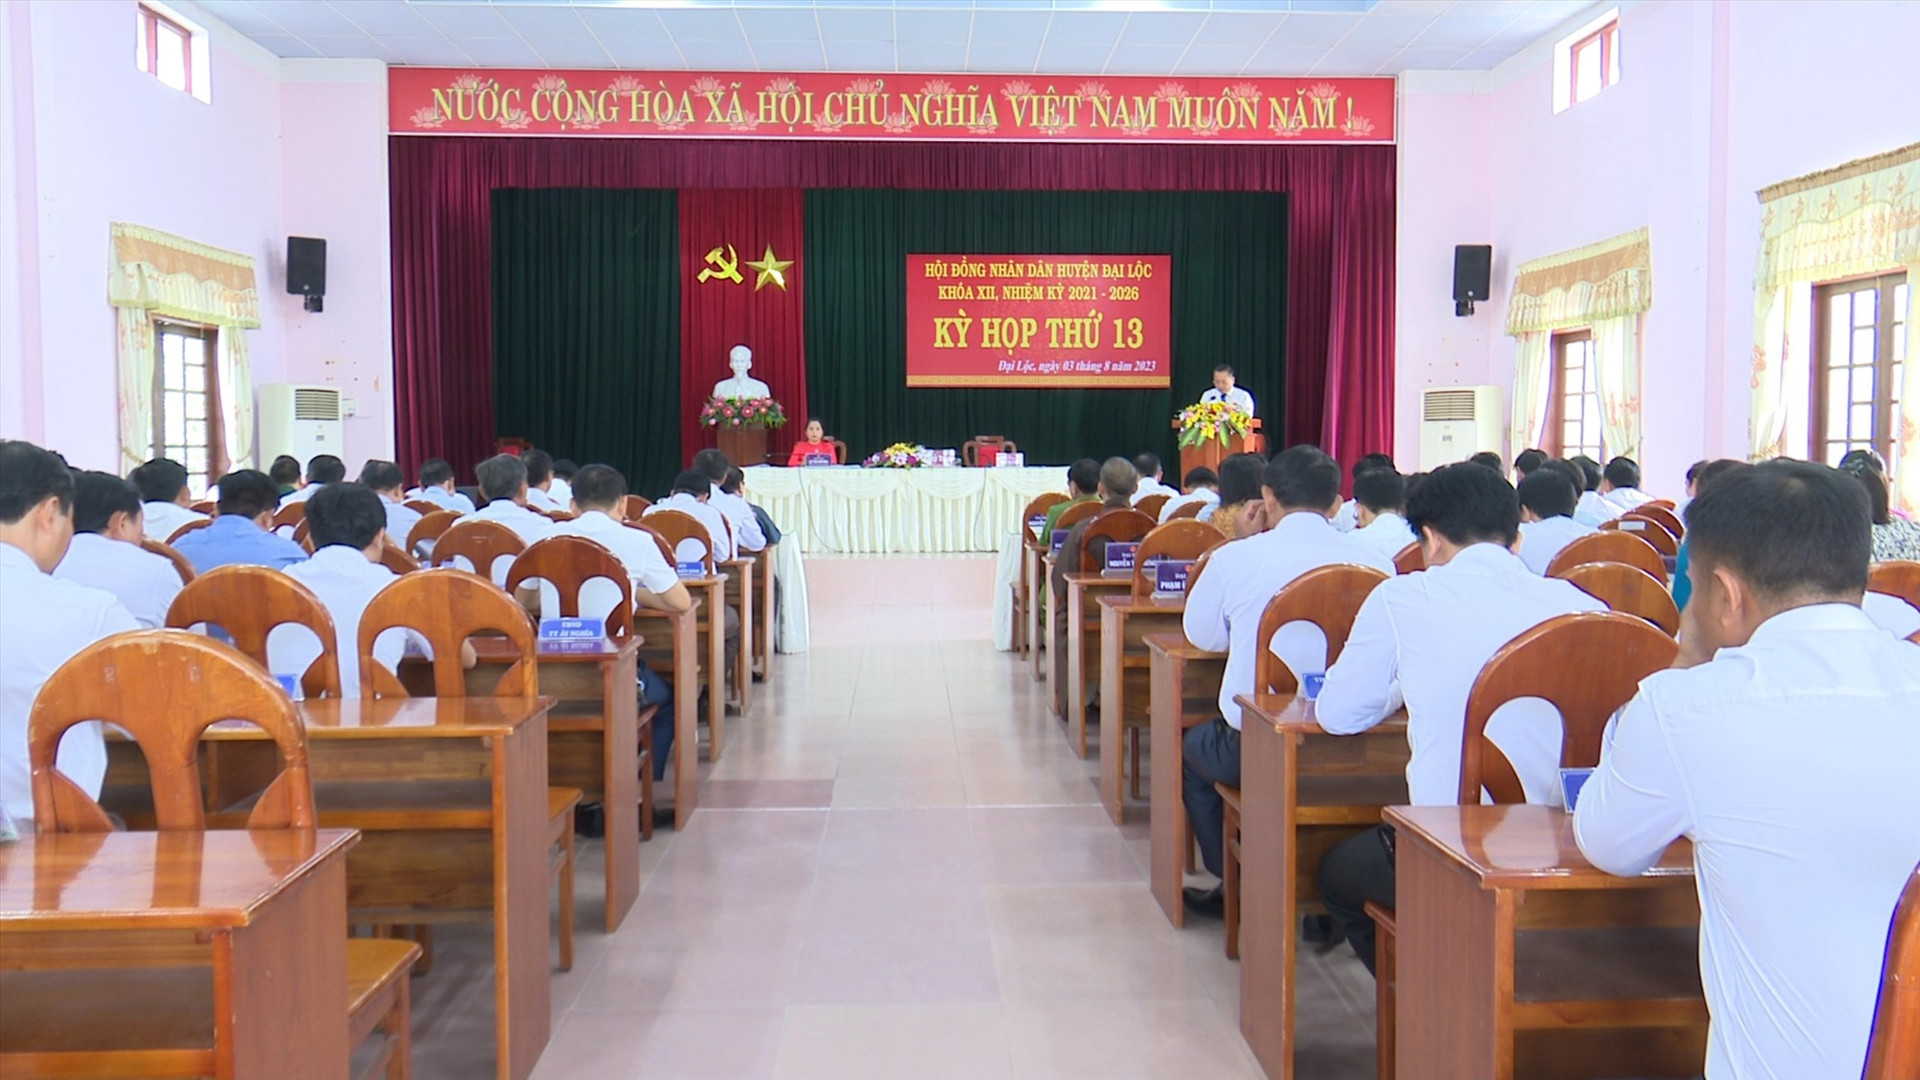 Quang cảnh kỳ họp HĐND huyện Đại Lộc. Ảnh: N.P